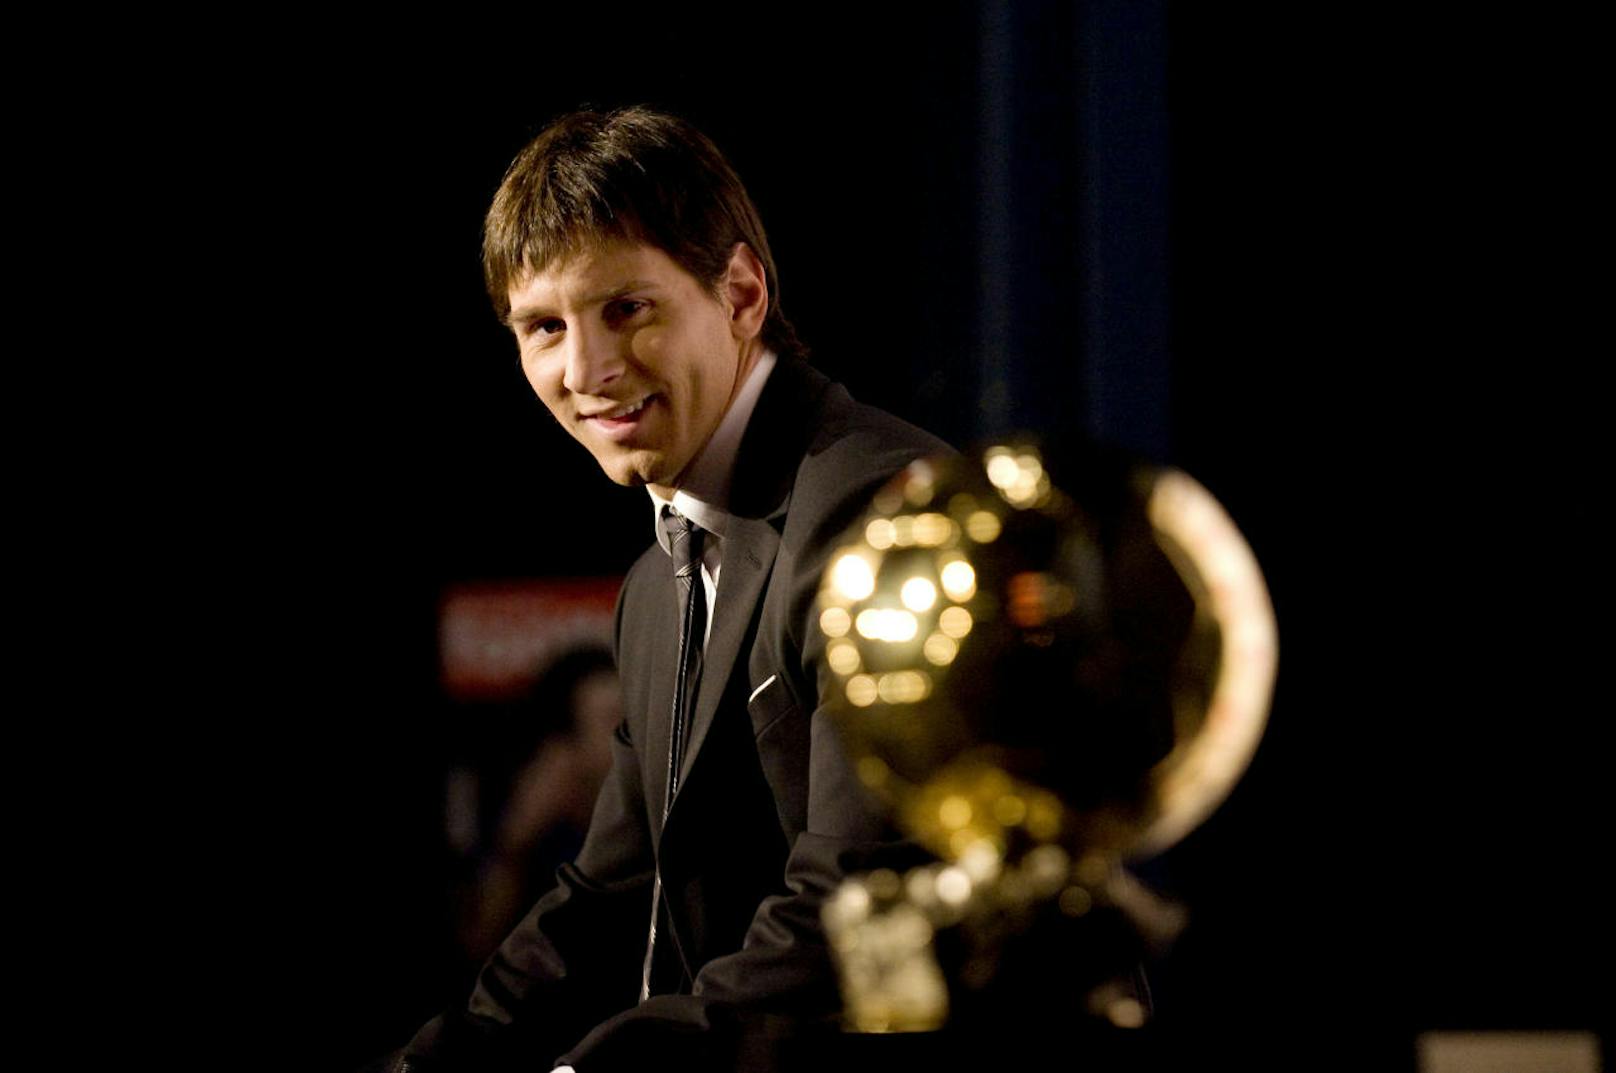 Erstmals gewann Messi die Trophäe im Jahr 2009 (Foto). 2010, 2011, 2012, 2015, 2019 und 2021 war er für die Fußball-Journalisten der beste Spieler der Welt.